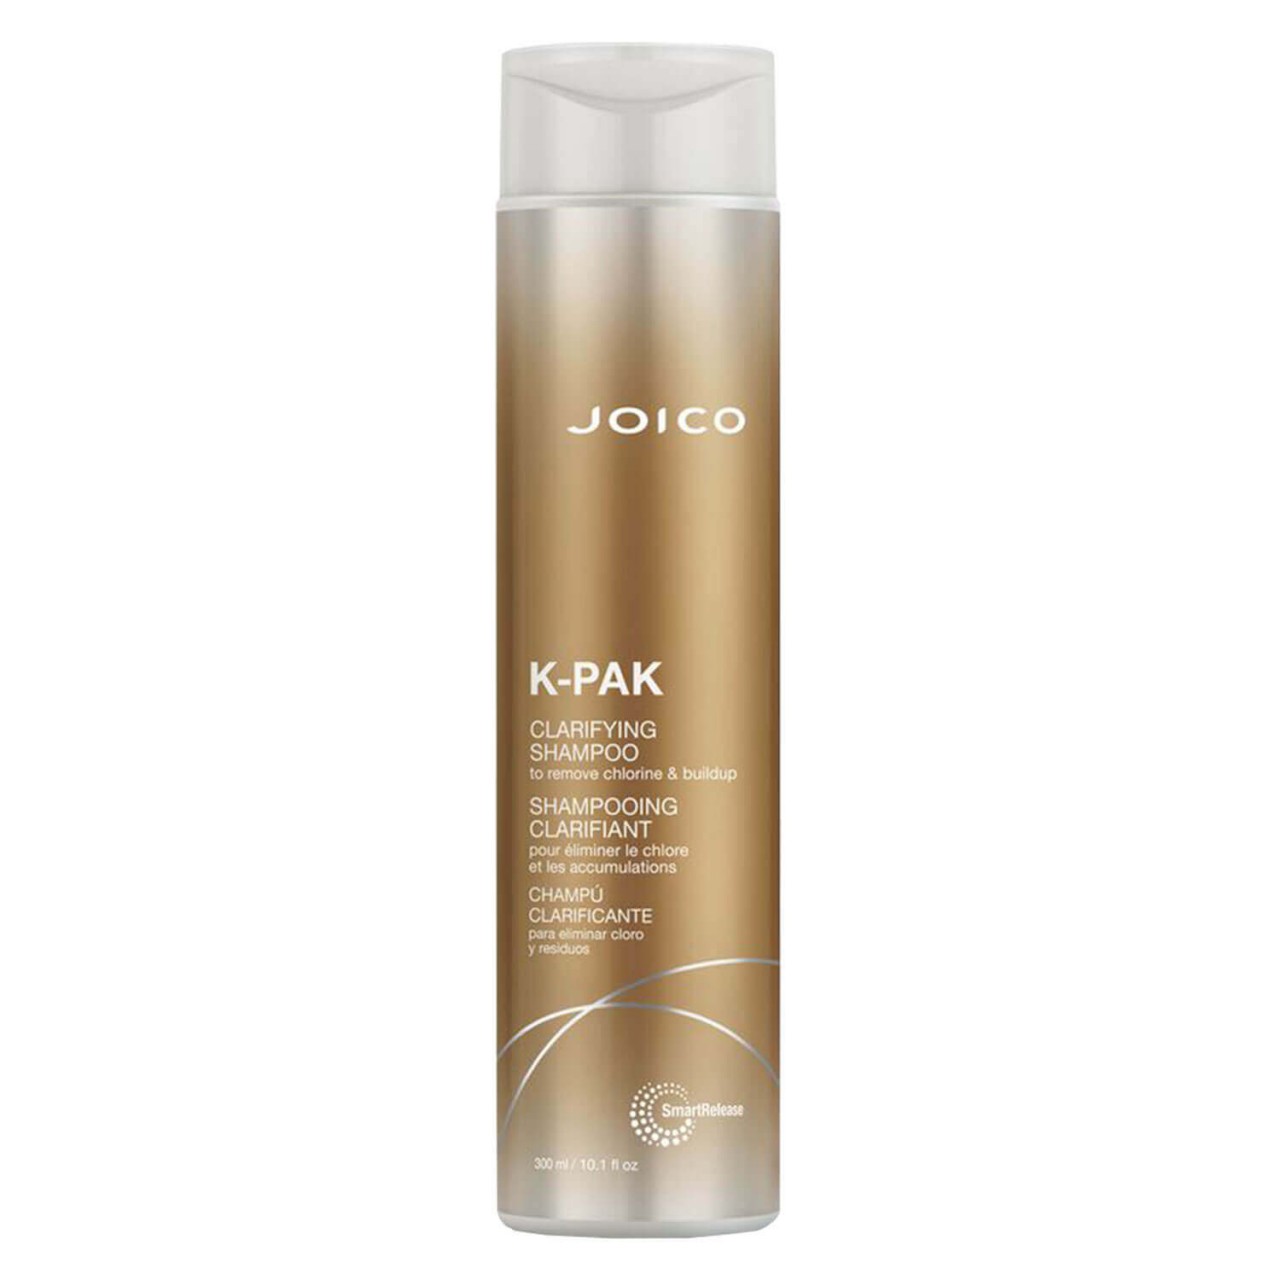 K-Pak - Clarifying Shampoo von Joico